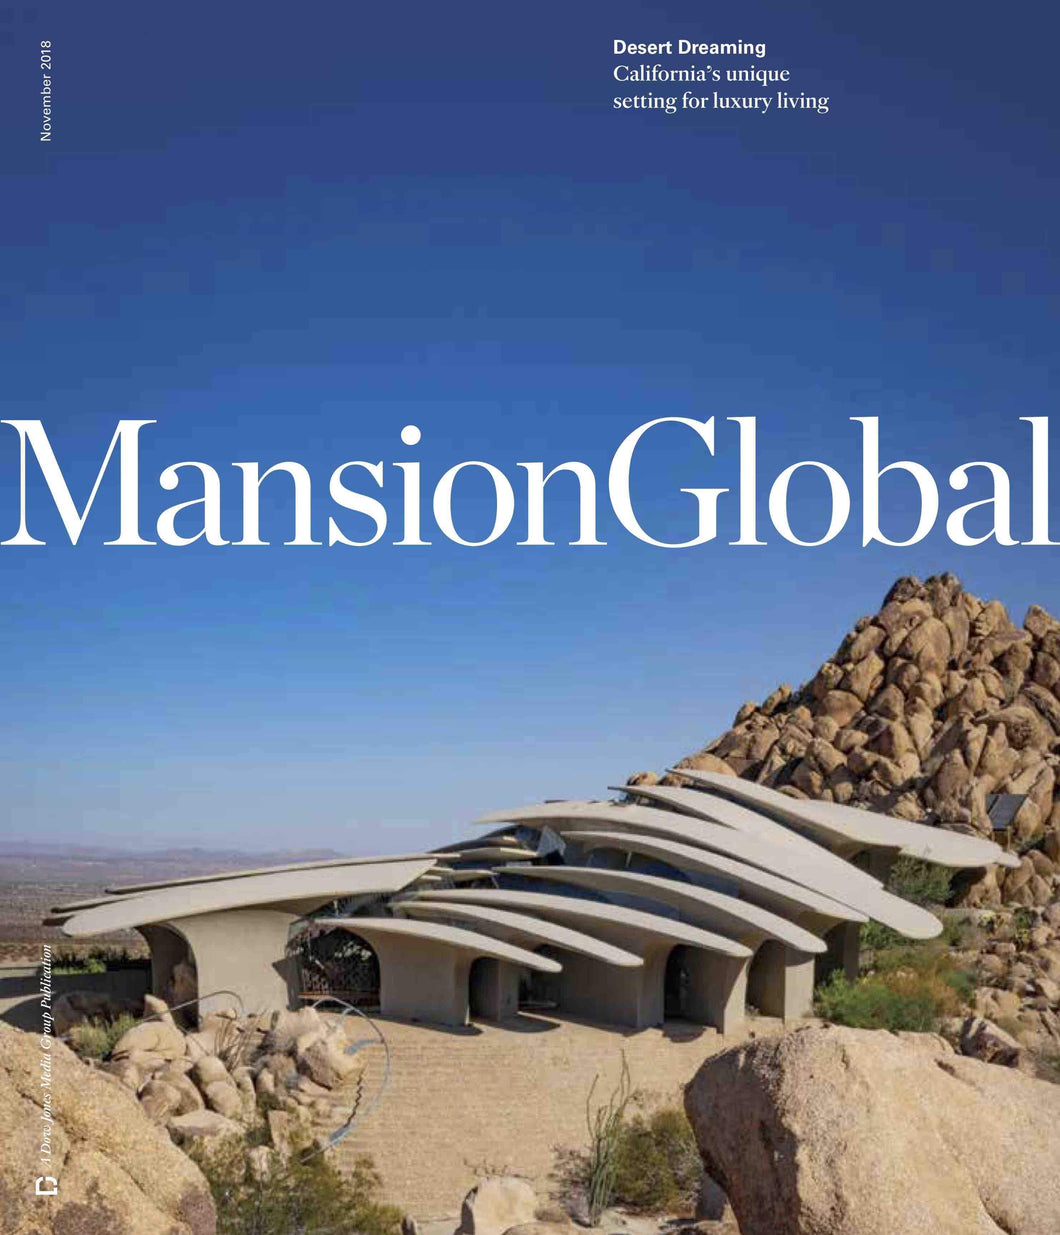 Desert Dreaming | Mansion Global cover November 2018